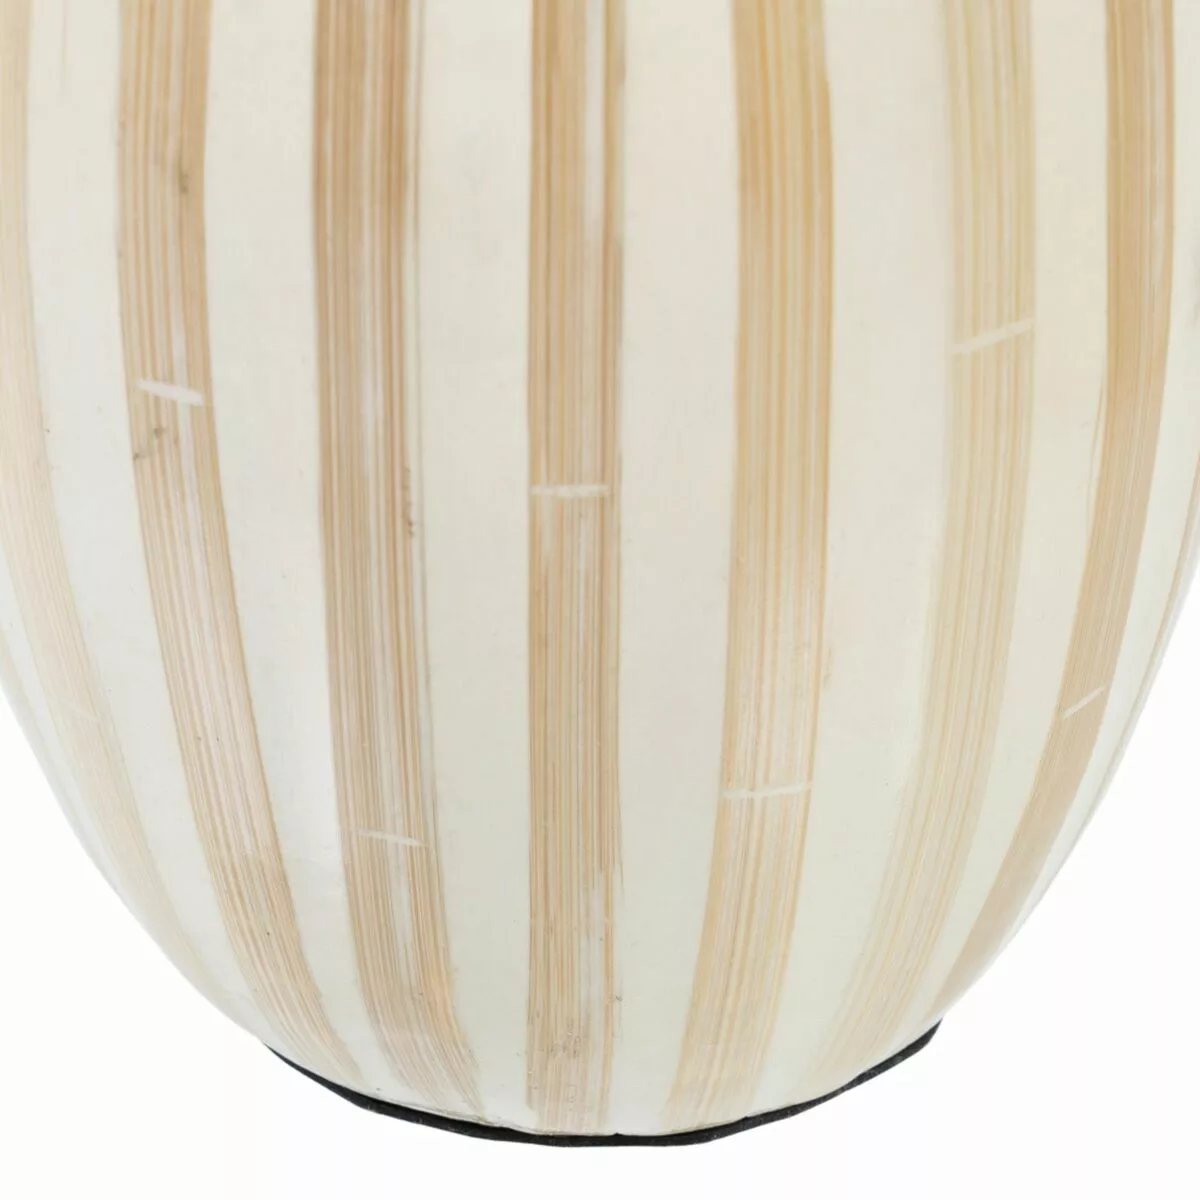 Vase Beige Bambus 15 X 15 X 30 Cm günstig online kaufen